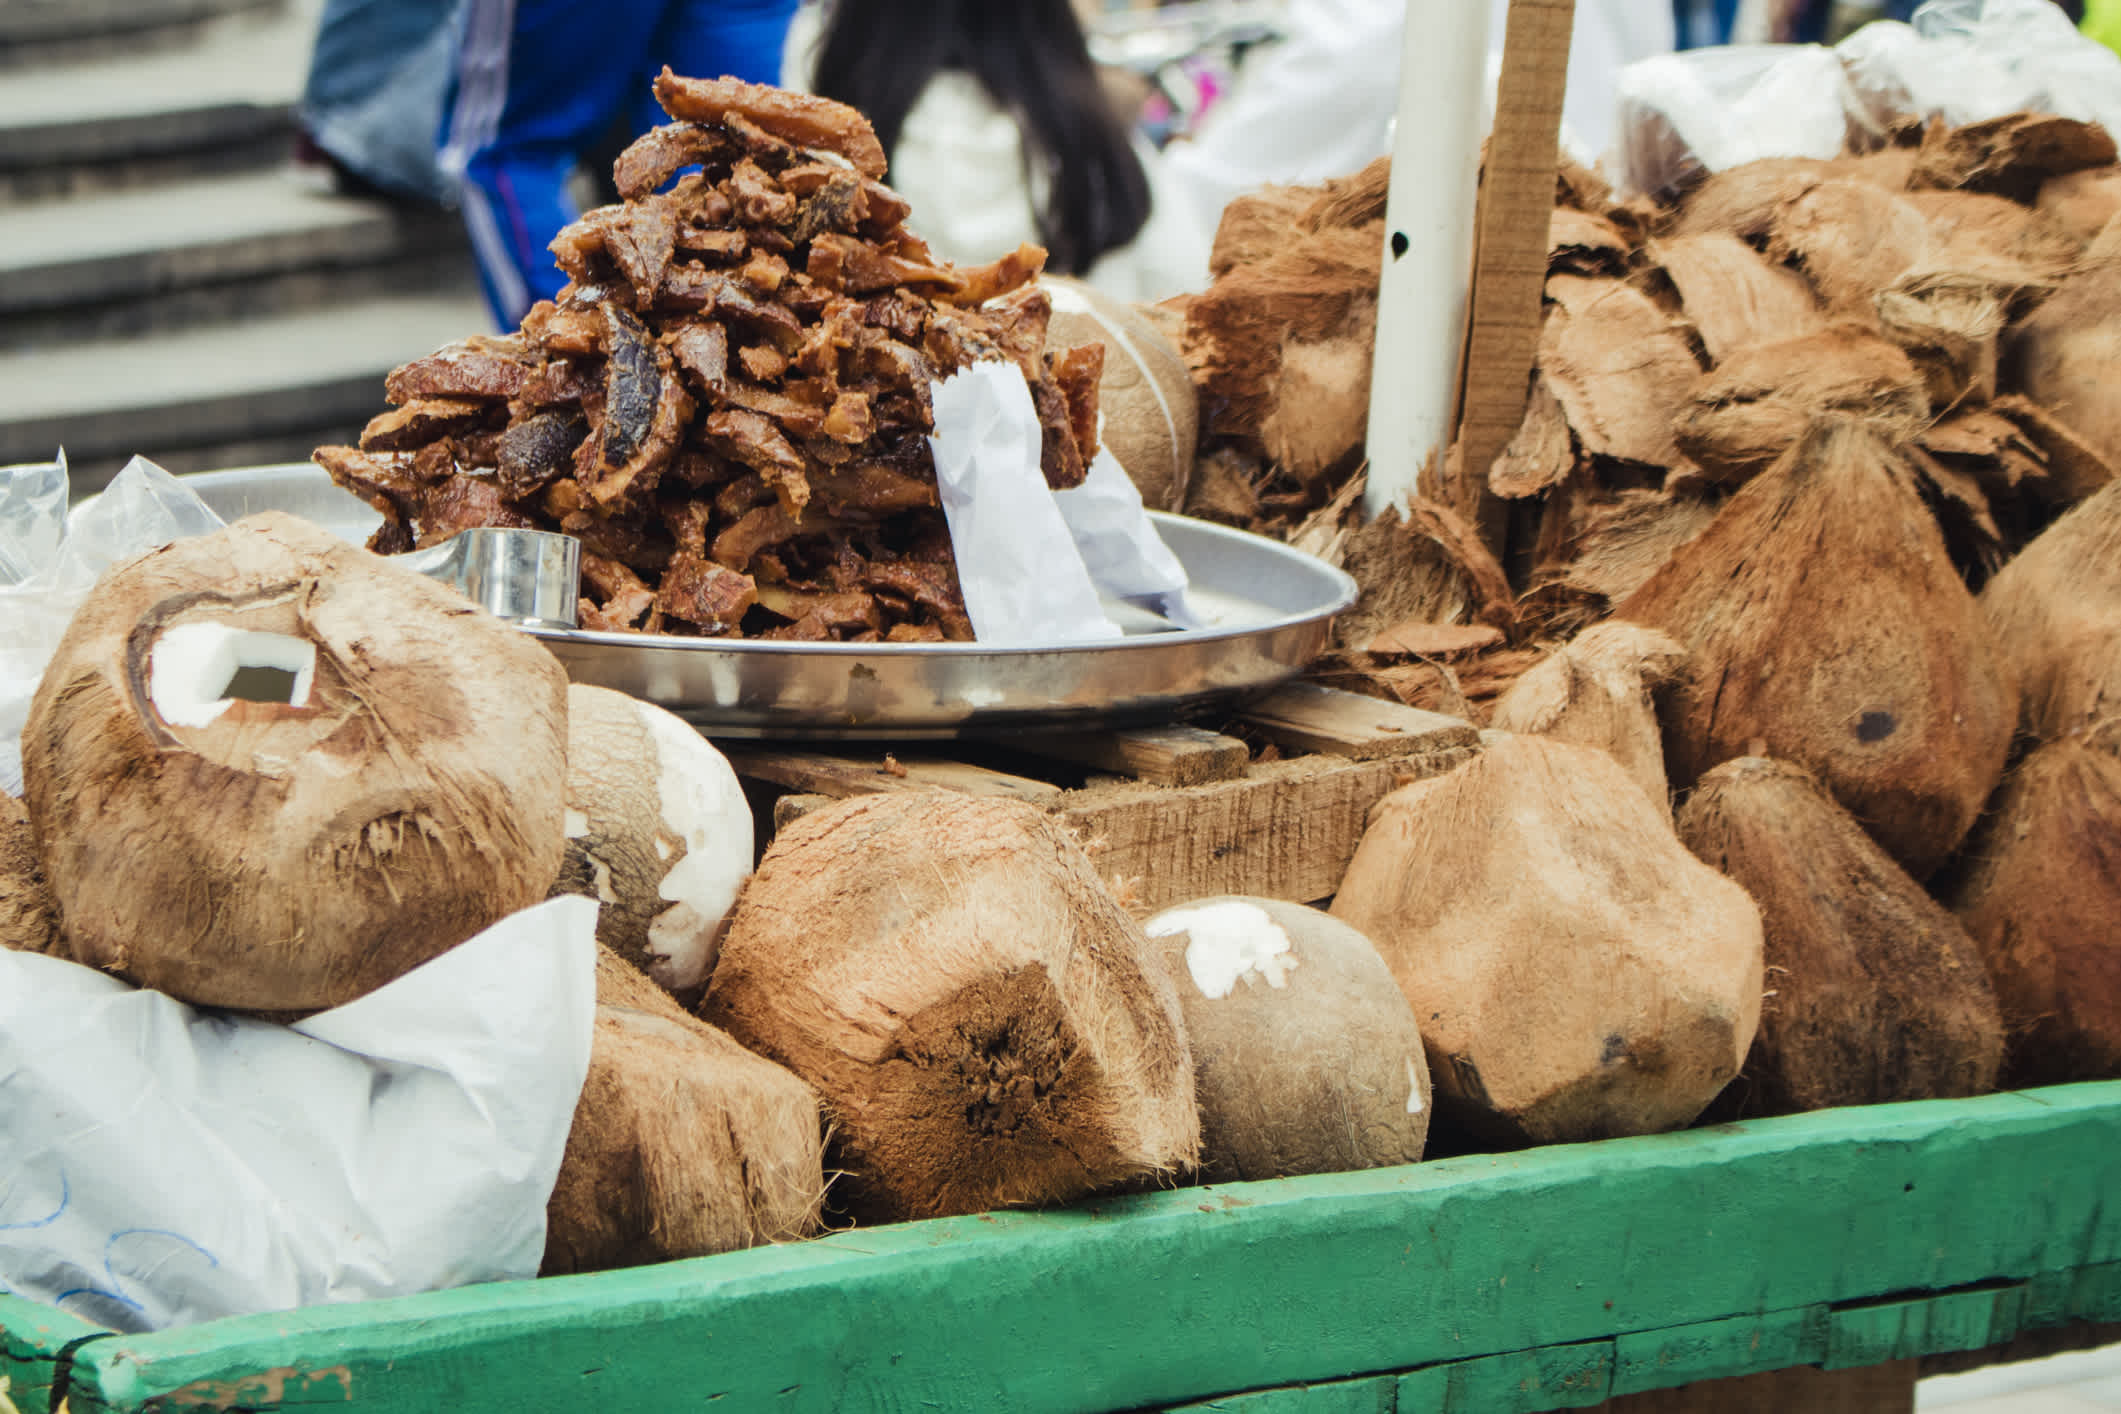 Kokosnüssen an einem kolumbianischen Marktstand.
